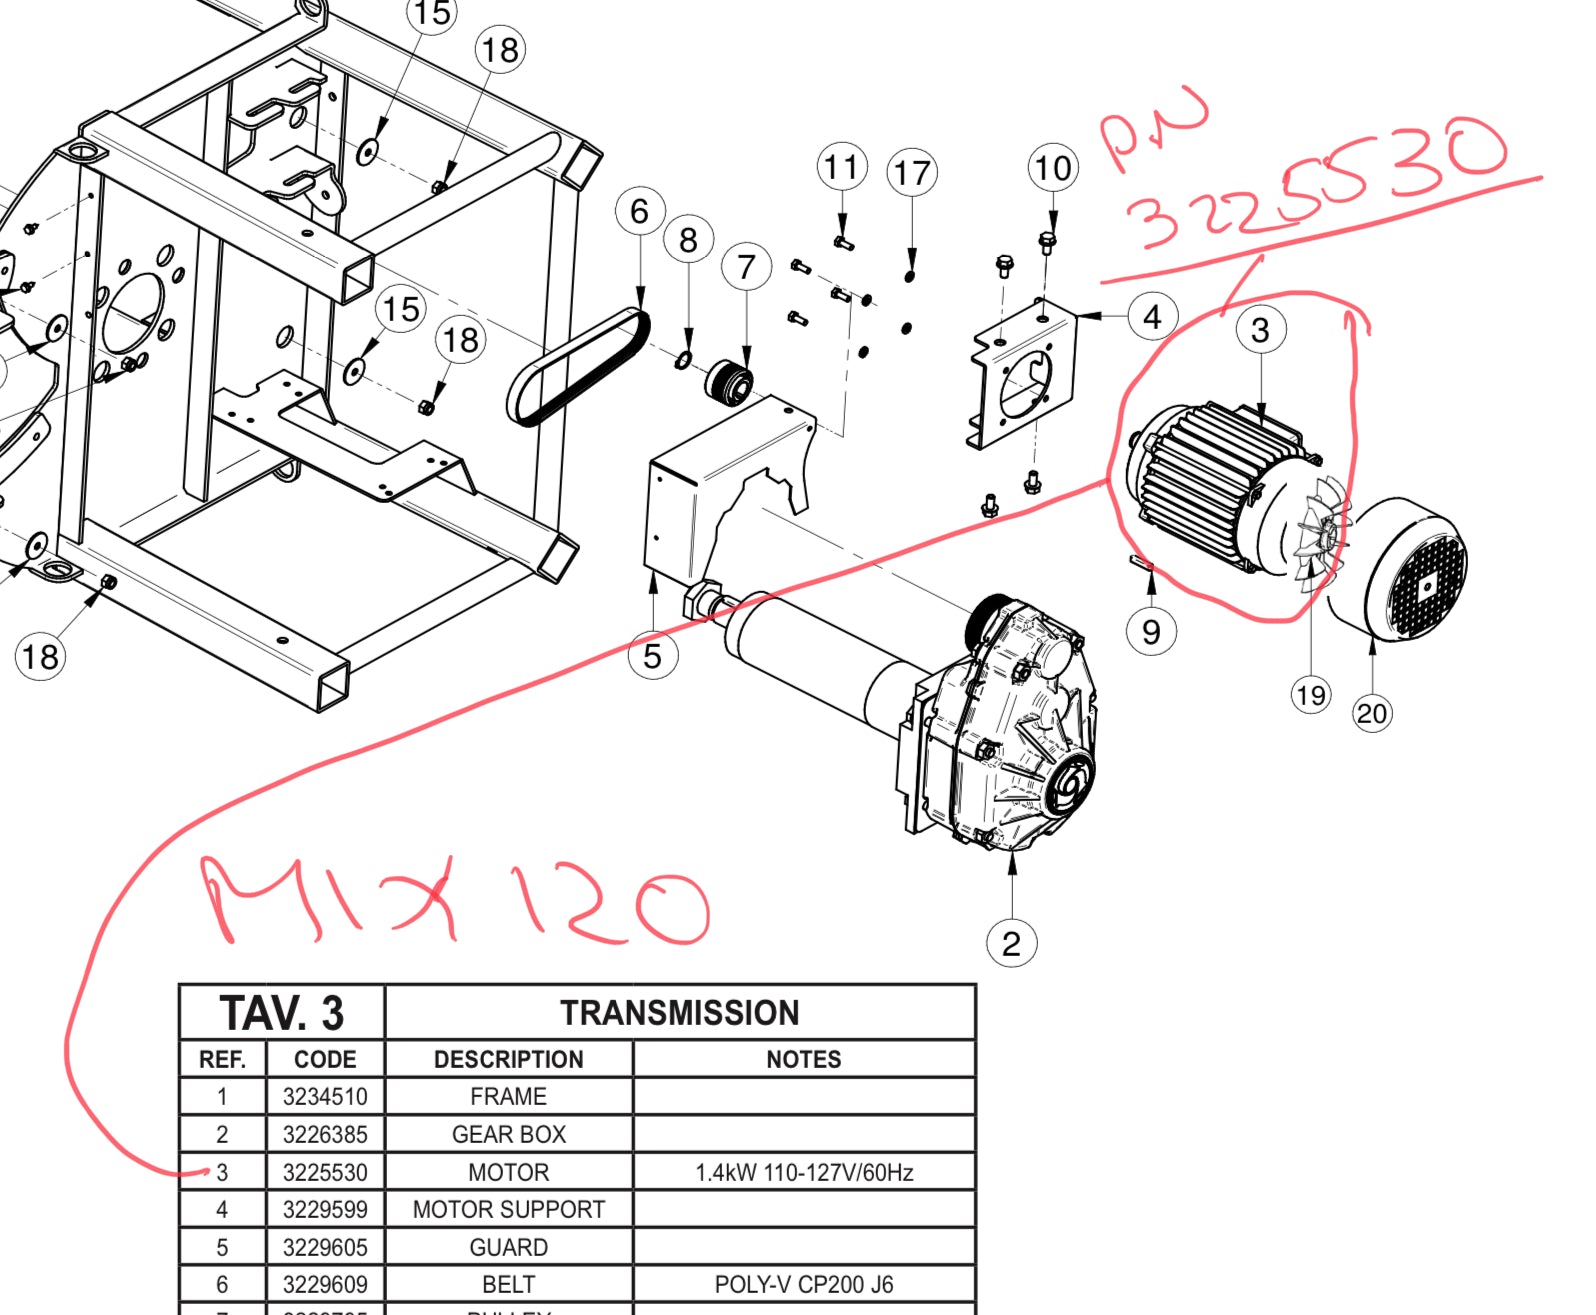 Part Number 3225530 - IMER MIX 120 110volt motor.